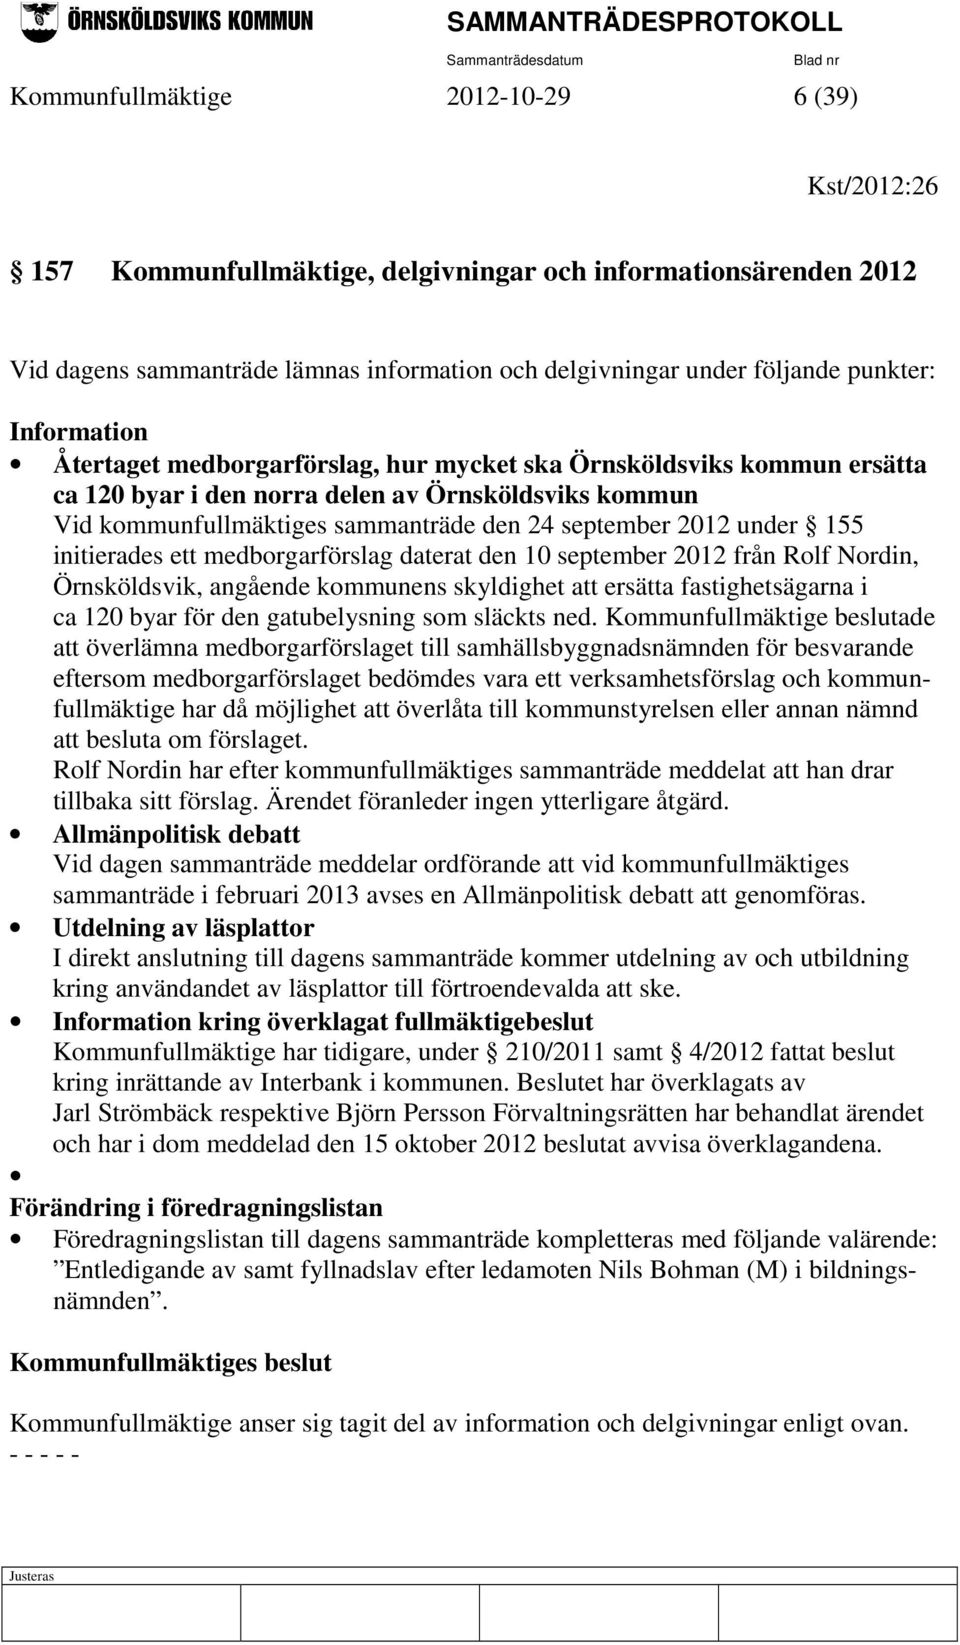 under 155 initierades ett medborgarförslag daterat den 10 september 2012 från Rolf Nordin, Örnsköldsvik, angående kommunens skyldighet att ersätta fastighetsägarna i ca 120 byar för den gatubelysning